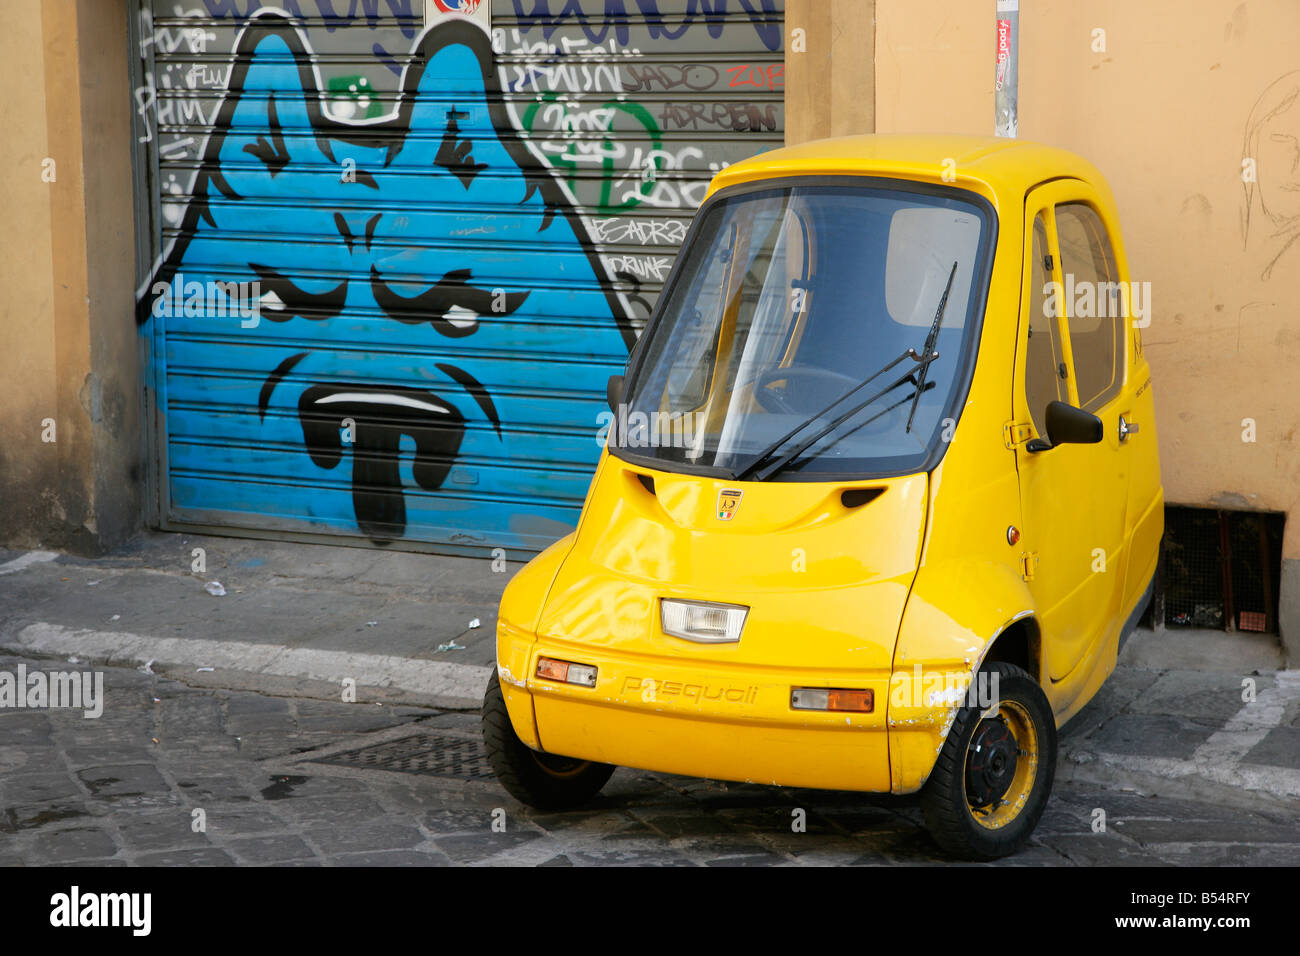 Piccolo giallo Pasquali Riscio auto e graffiti porta di garage Foto Stock